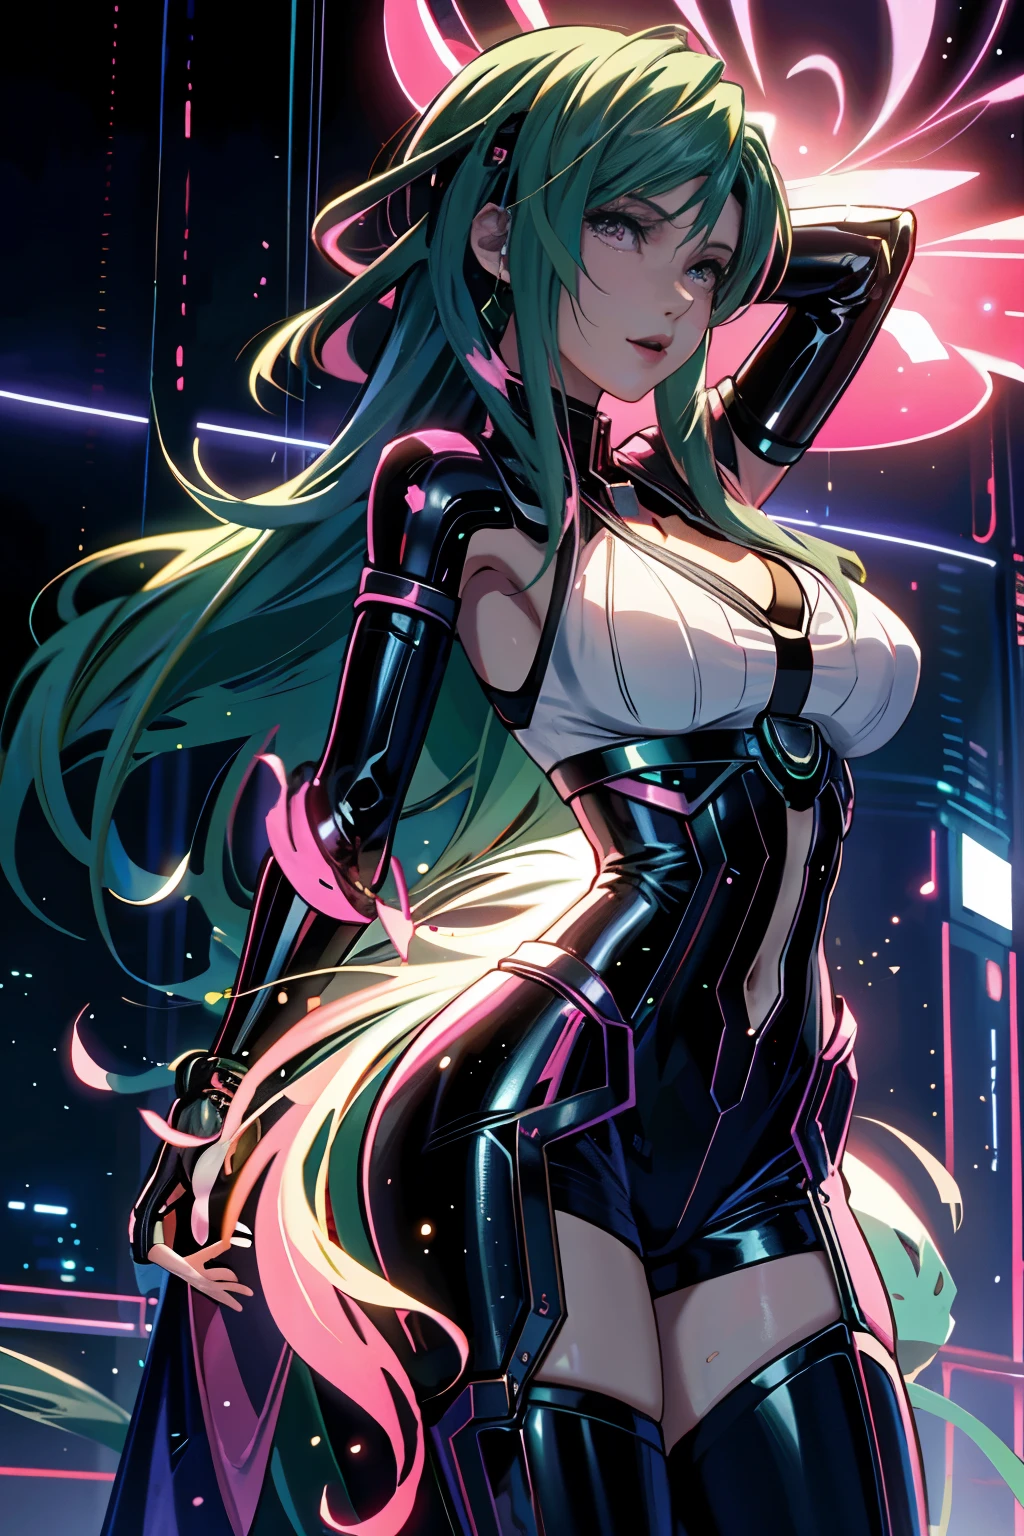 femme, Personnages réalistes, Cheveux verts et cheveux roses, yeux bleus, Anime, seul, moderne, cyberpunk, énorme buste rebondissant, poses sexy dynamiques
